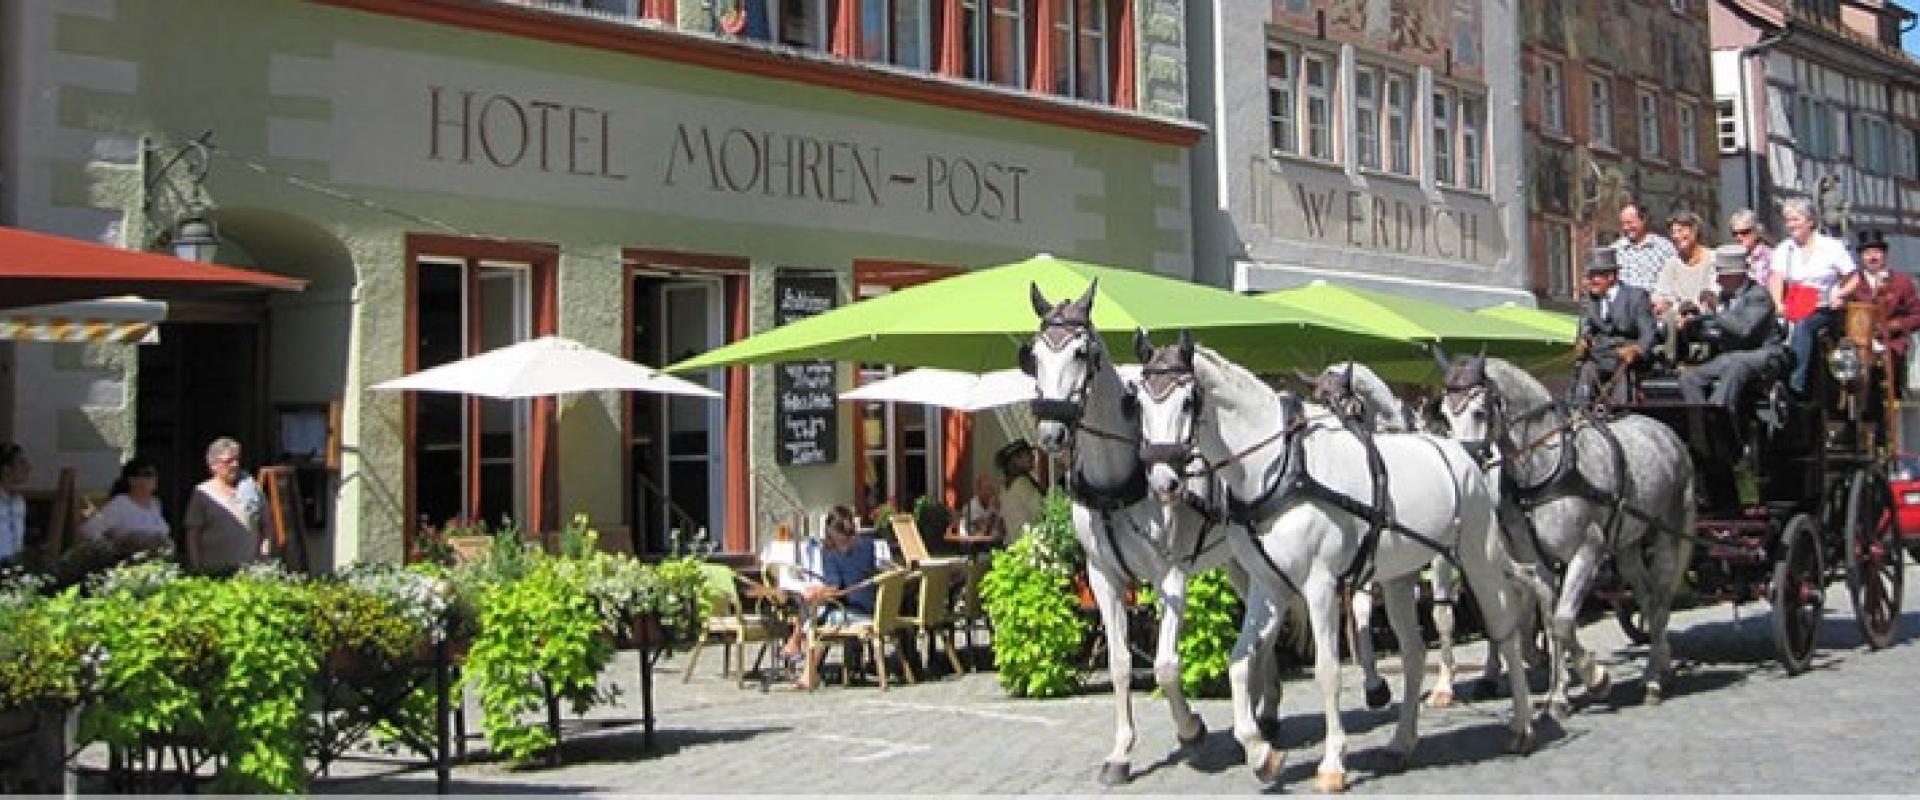 15921 Biker Hotel Mohren Post im Allgäu/Bayerisch Schwaben.jpg